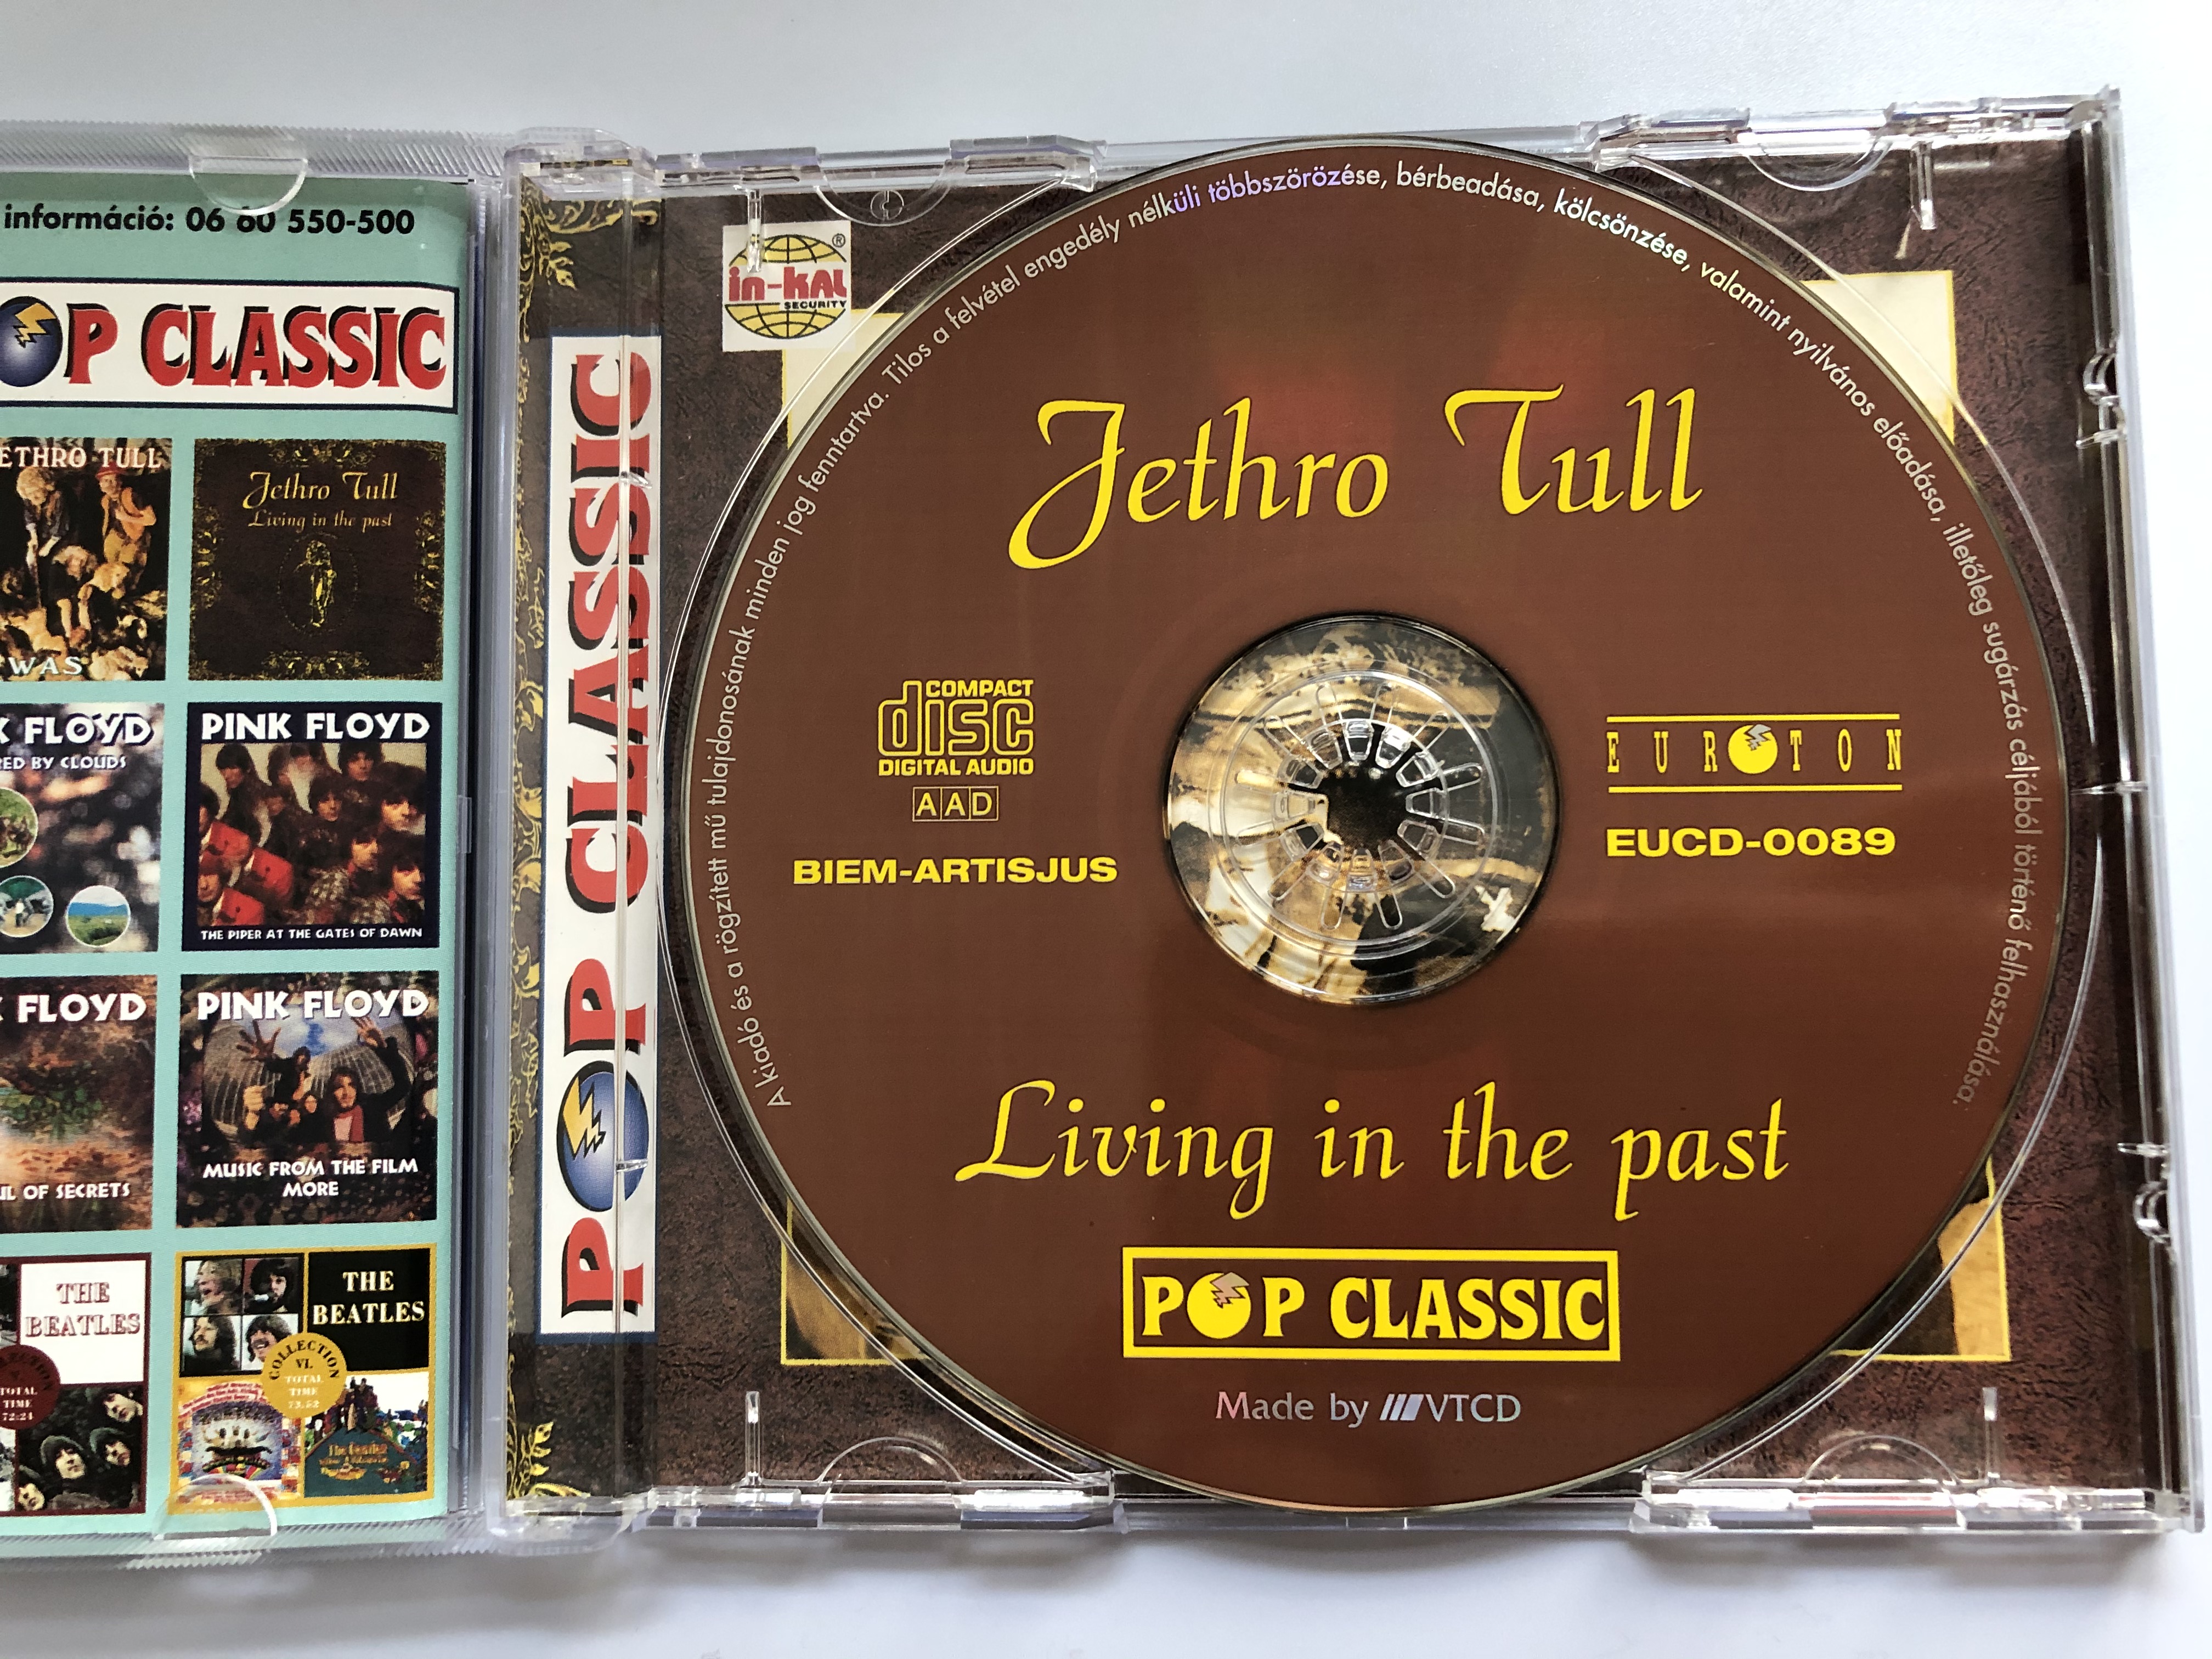 jethro-tull-living-in-the-past-pop-classic-euroton-audio-cd-eucd-0089-2-.jpg